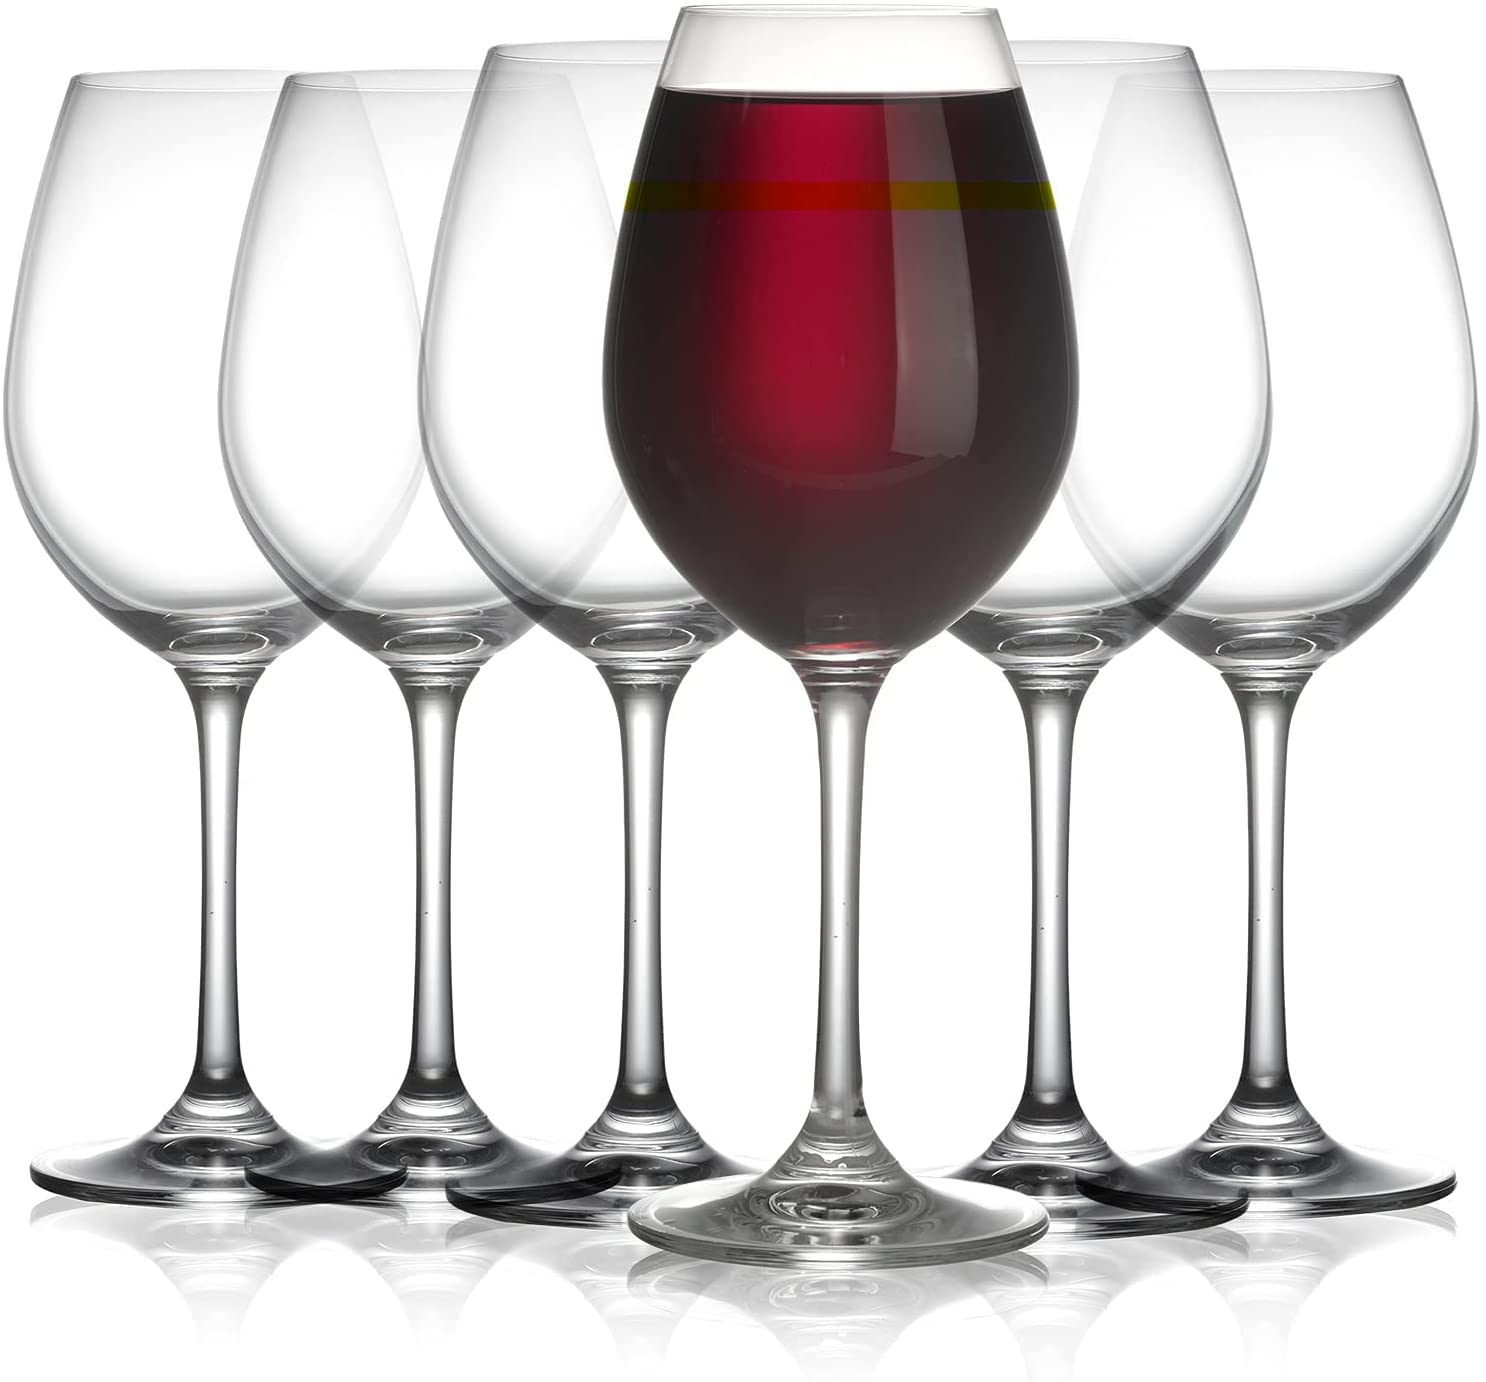 Stemmed Wine Glasses (24 Count Case Pack)